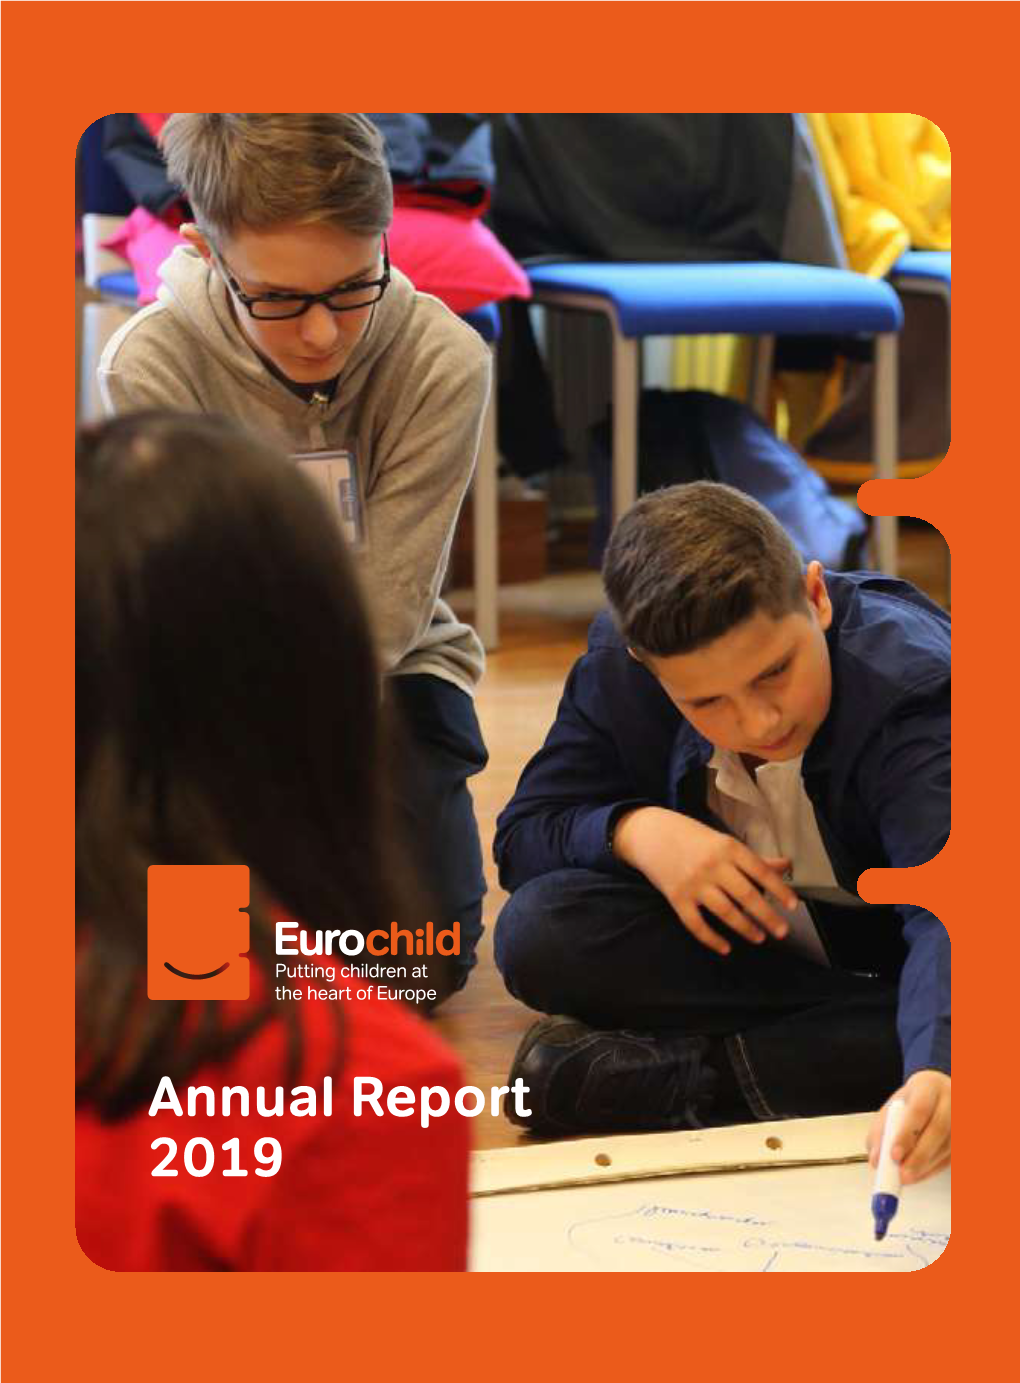 Annual Report 2019 Eurochild Annual Report 2019